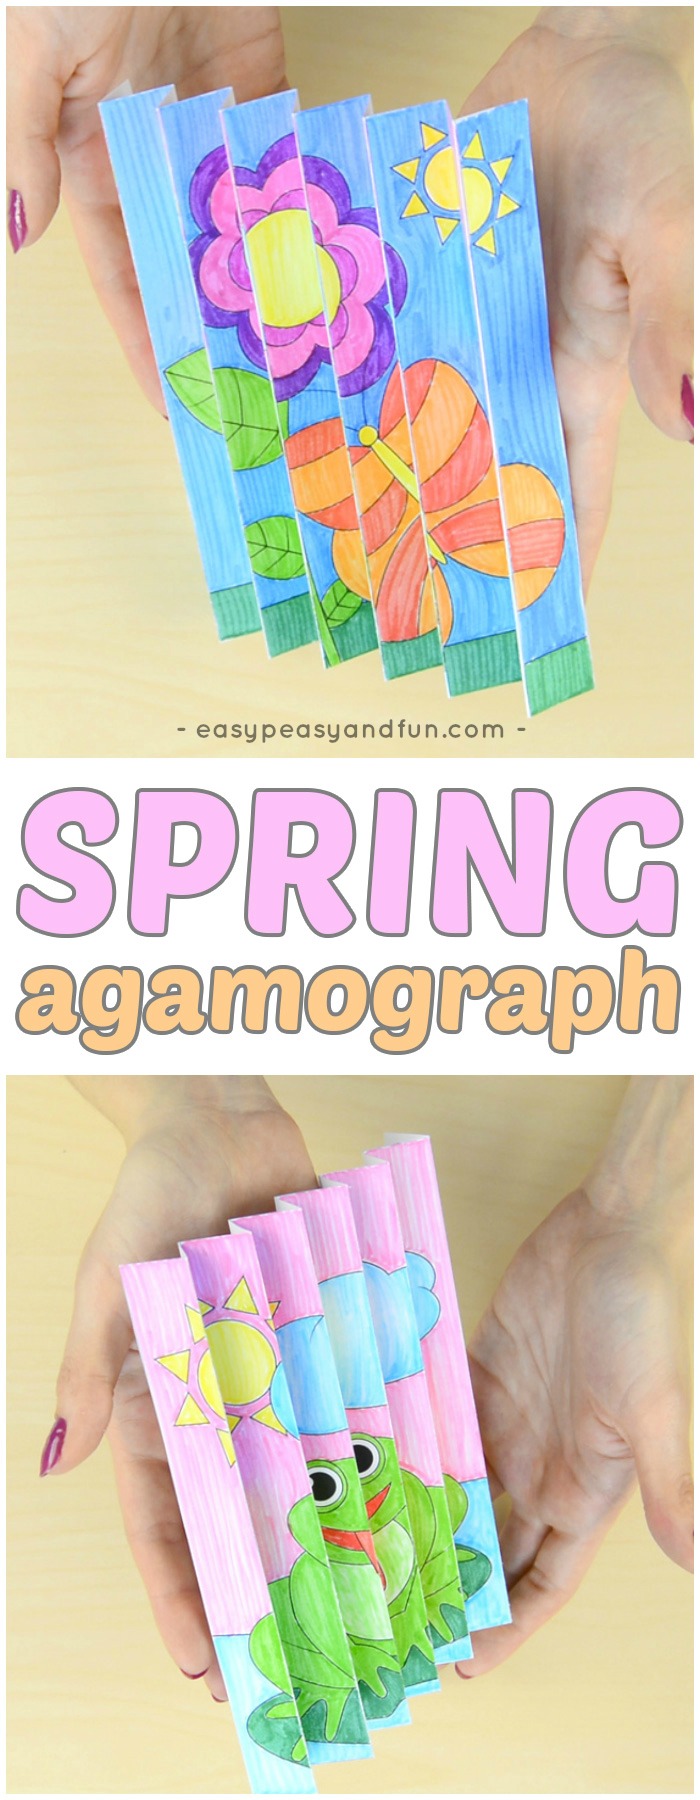 Printable Spring Agamograph Template Craft for Kids #springcrafts #papercrafts #craftsforkids